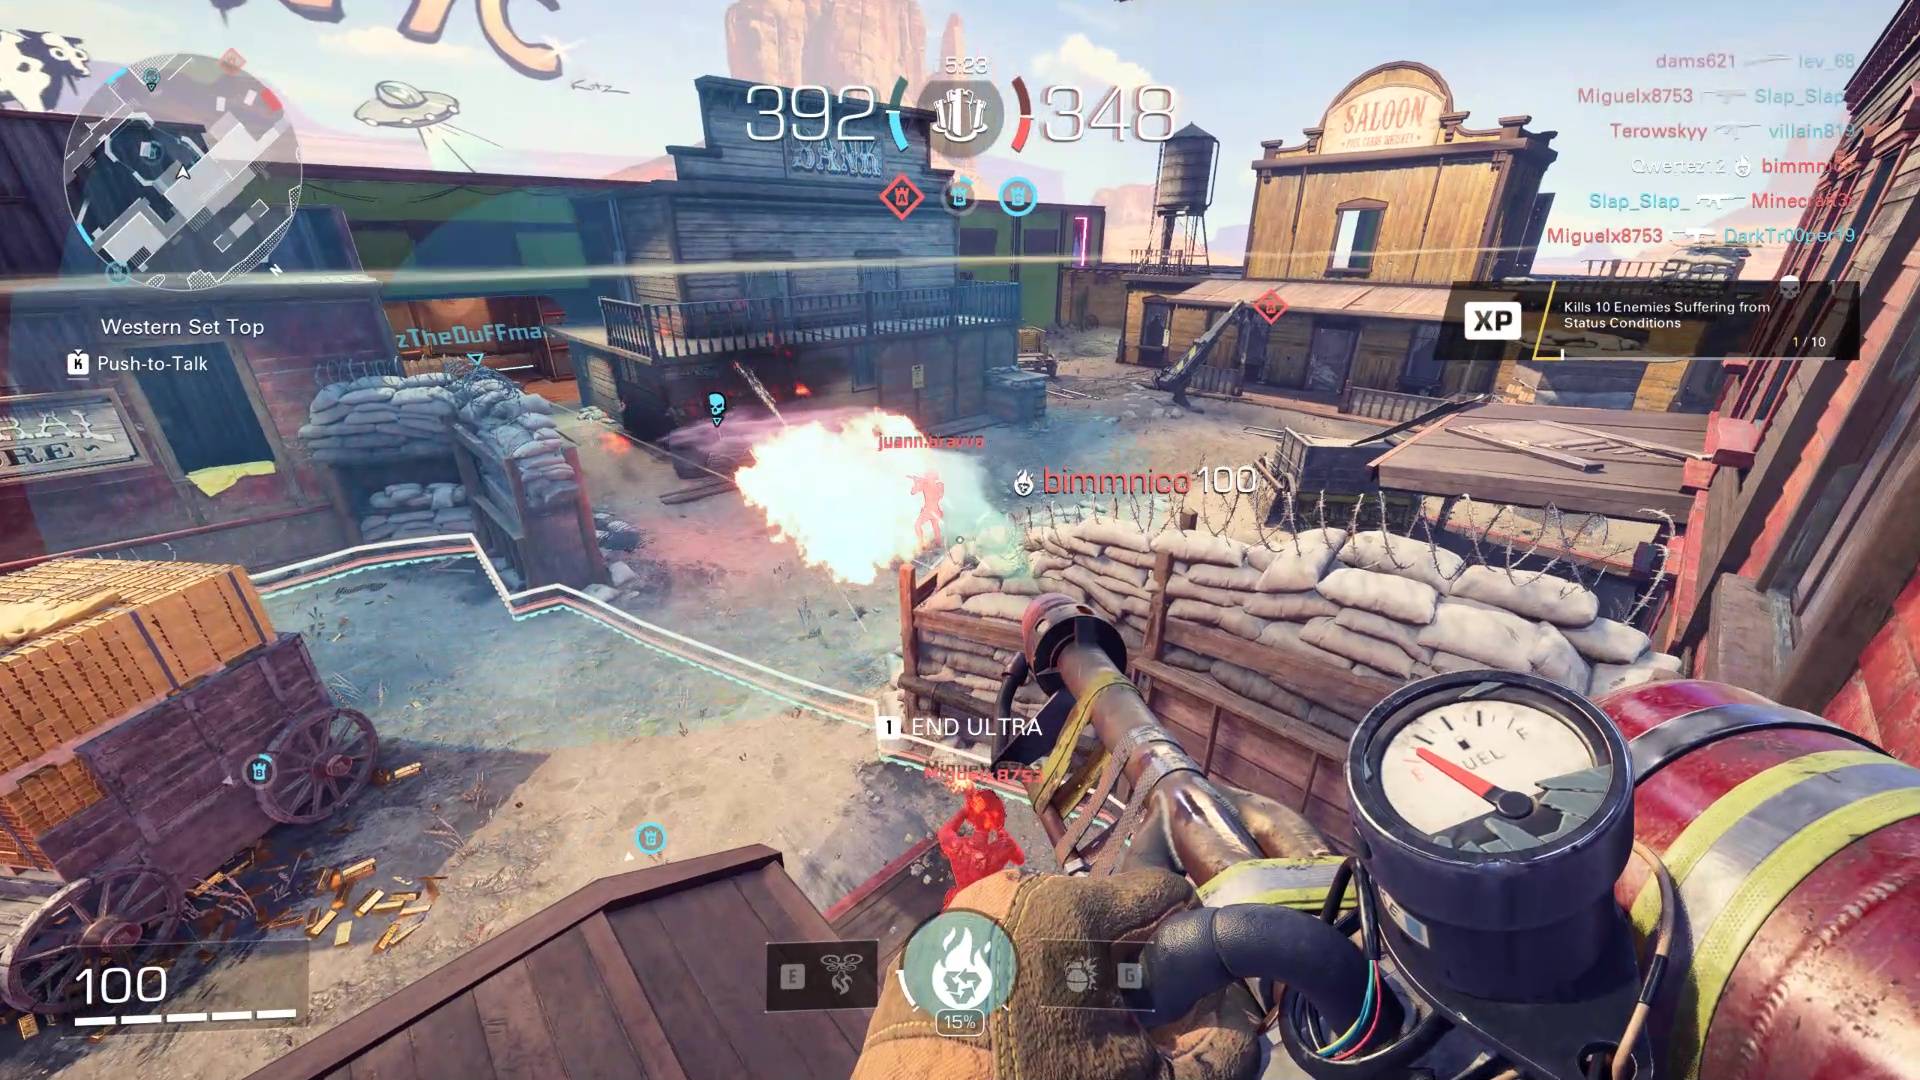 Snímek z hraní XDefiant ukazující přestřelku